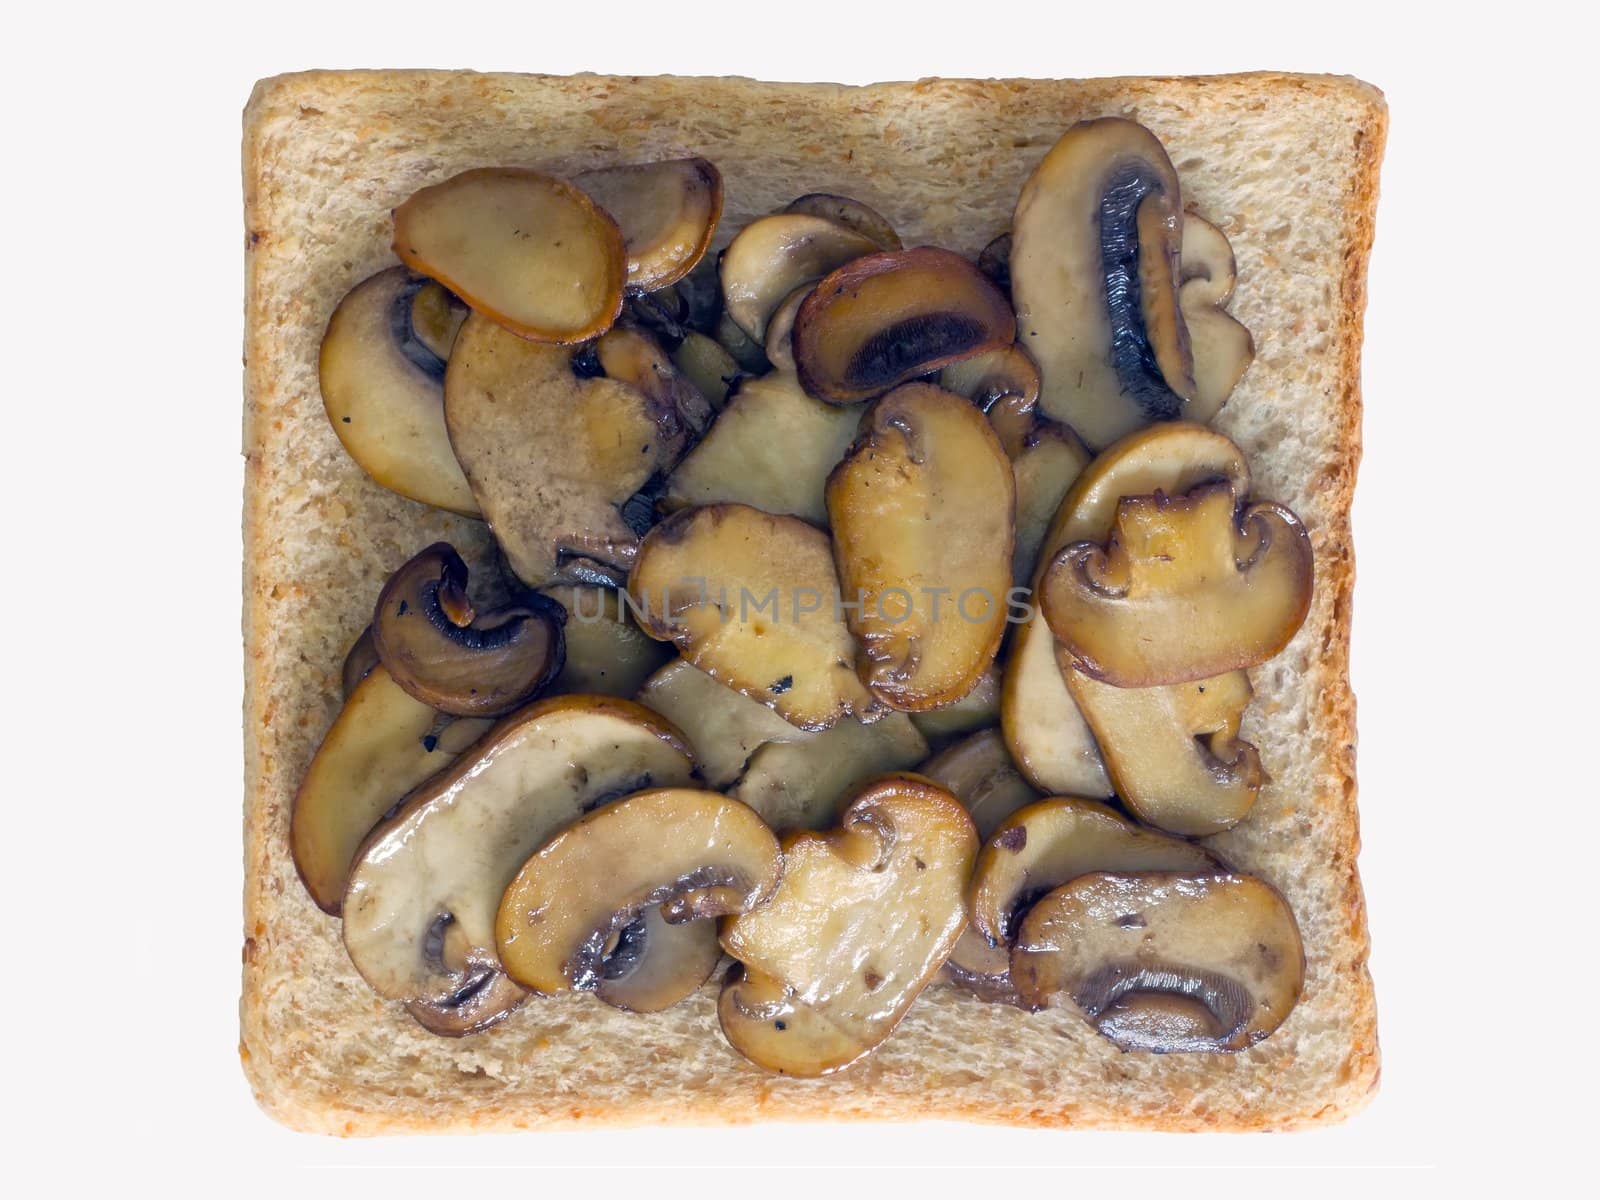 mushroom sandwich by zkruger